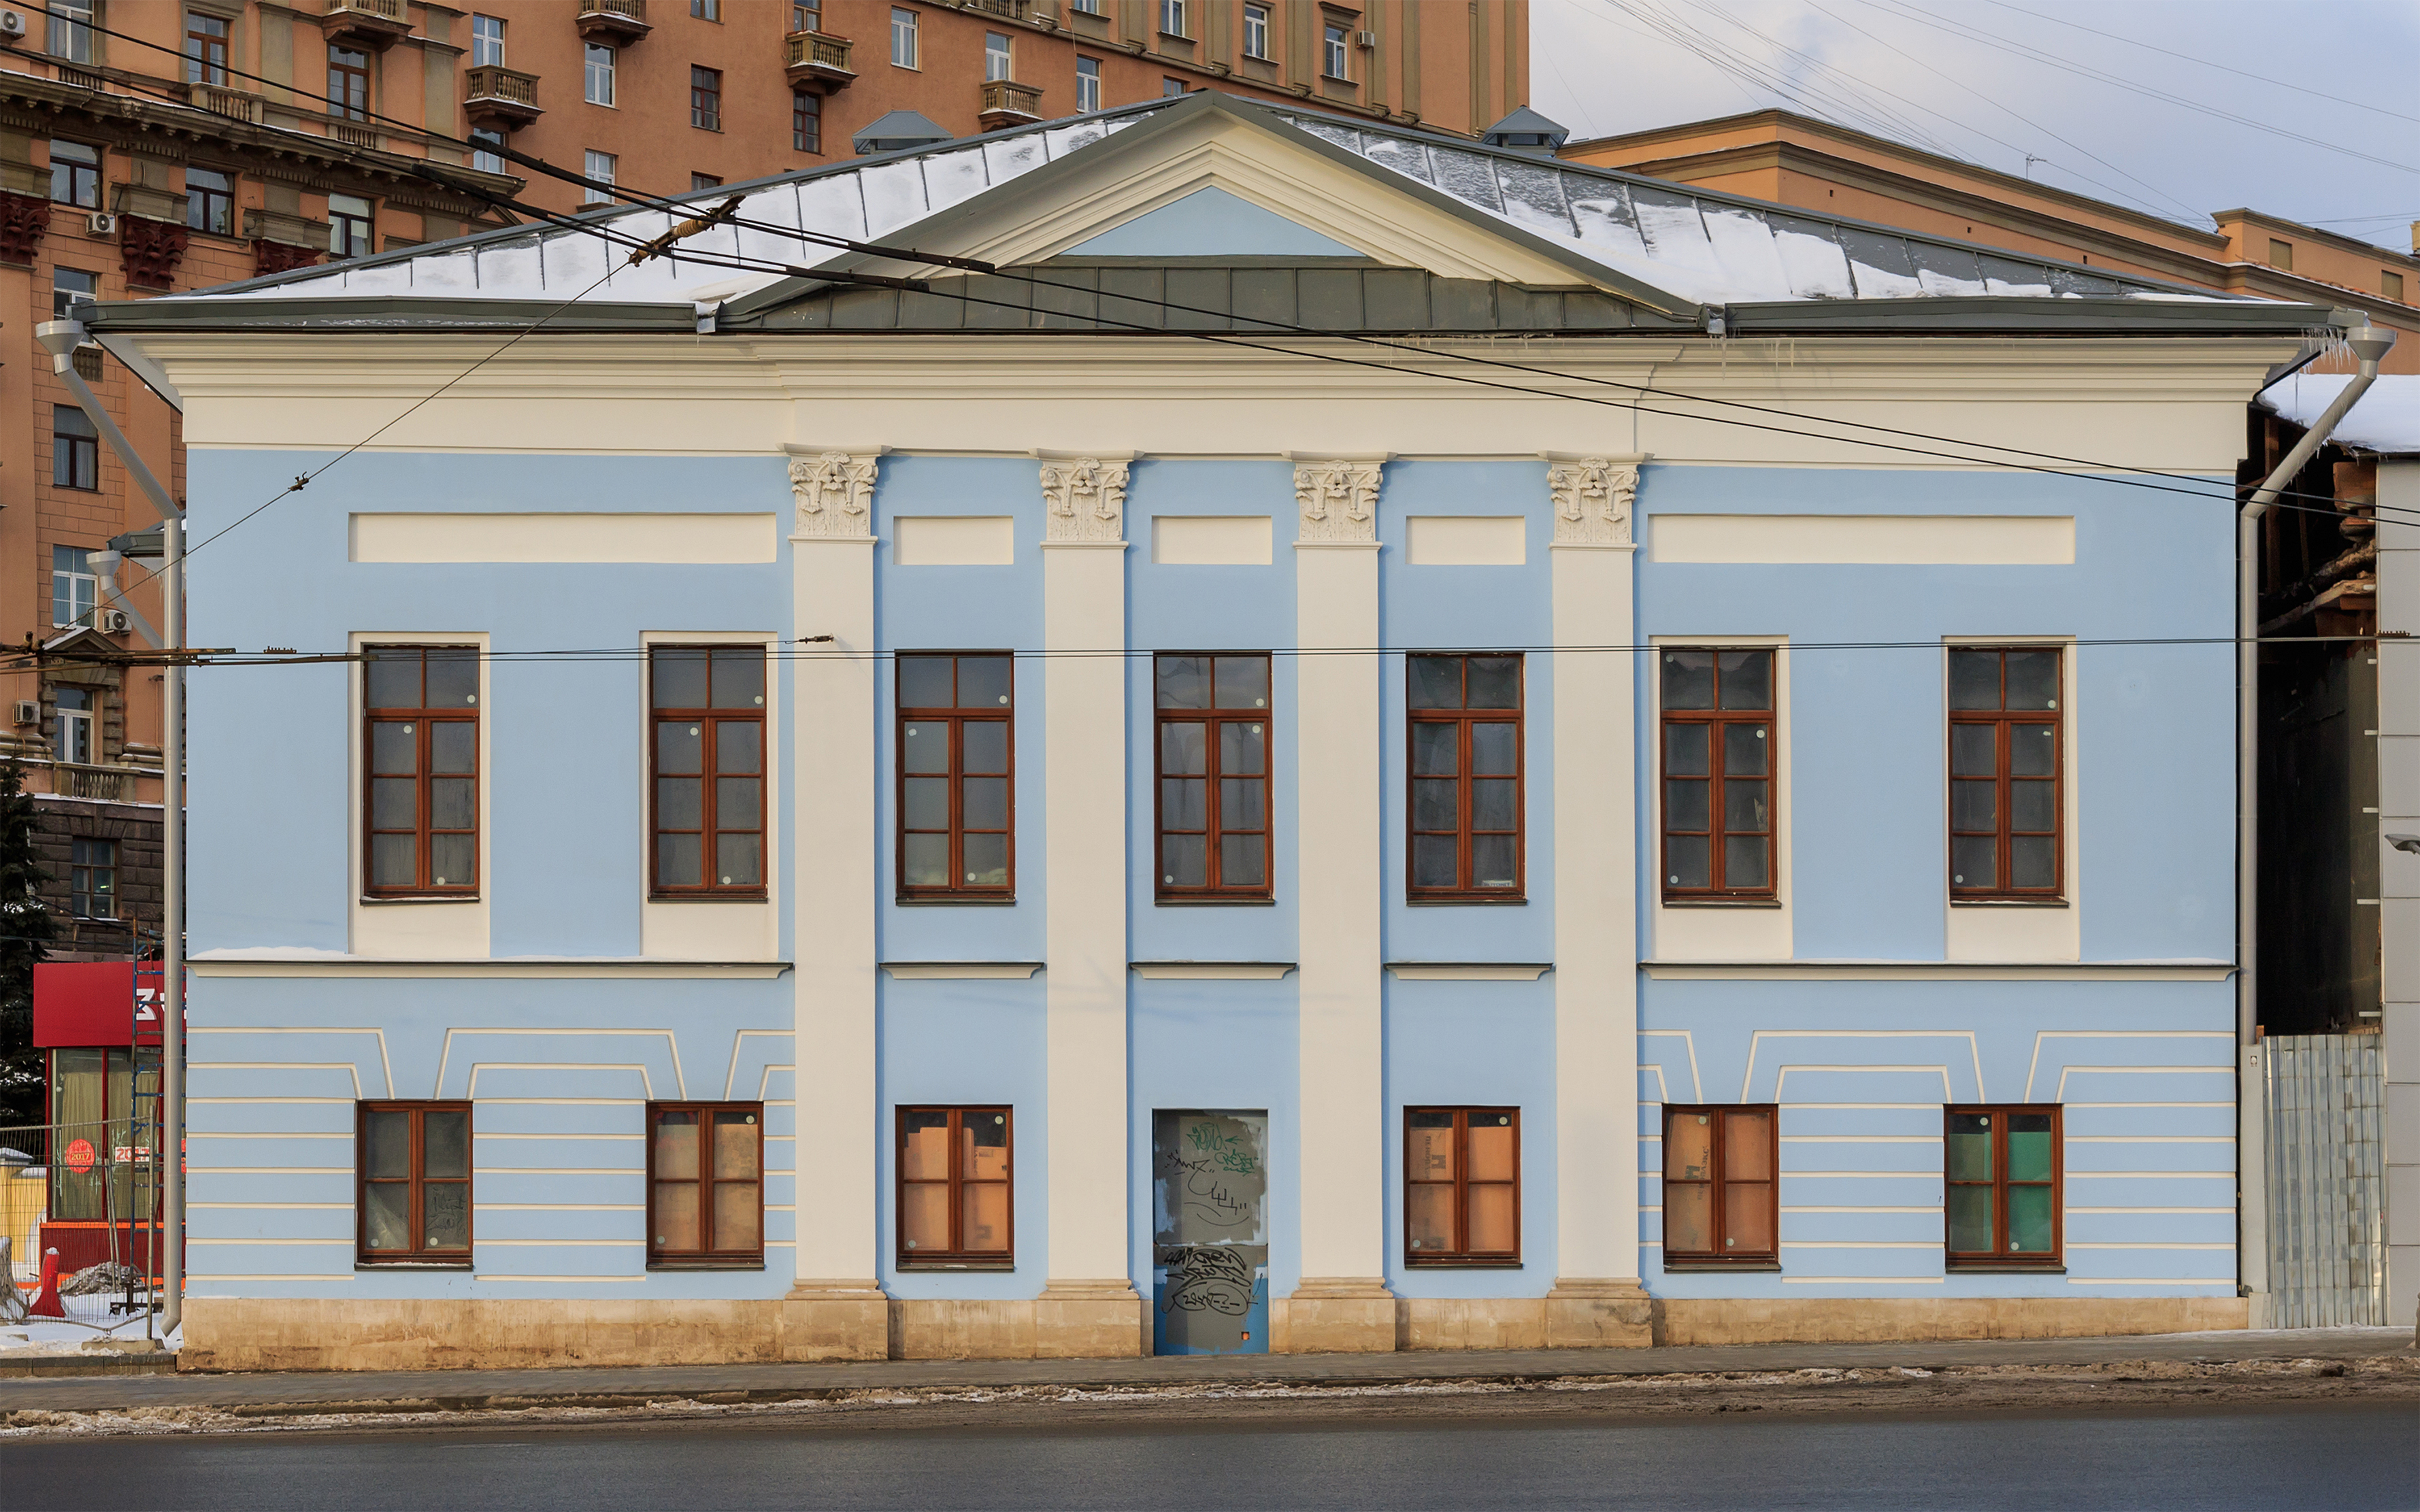 Moscow TaganskayaSq Kolesnikov House 01-2017